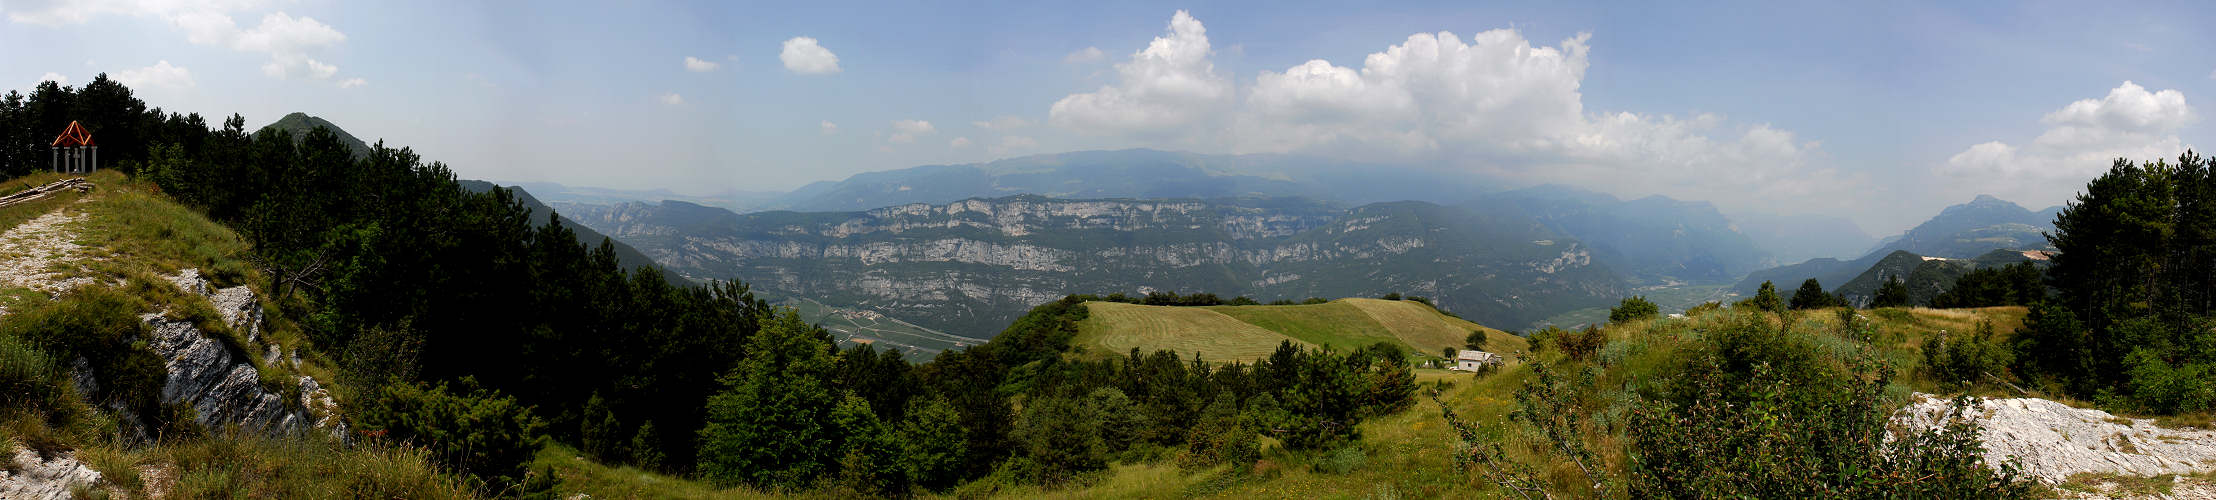 Breonio di Fumane, panoramica dal monte Crocetta verso la Val d'Adige ed il monte Baldo